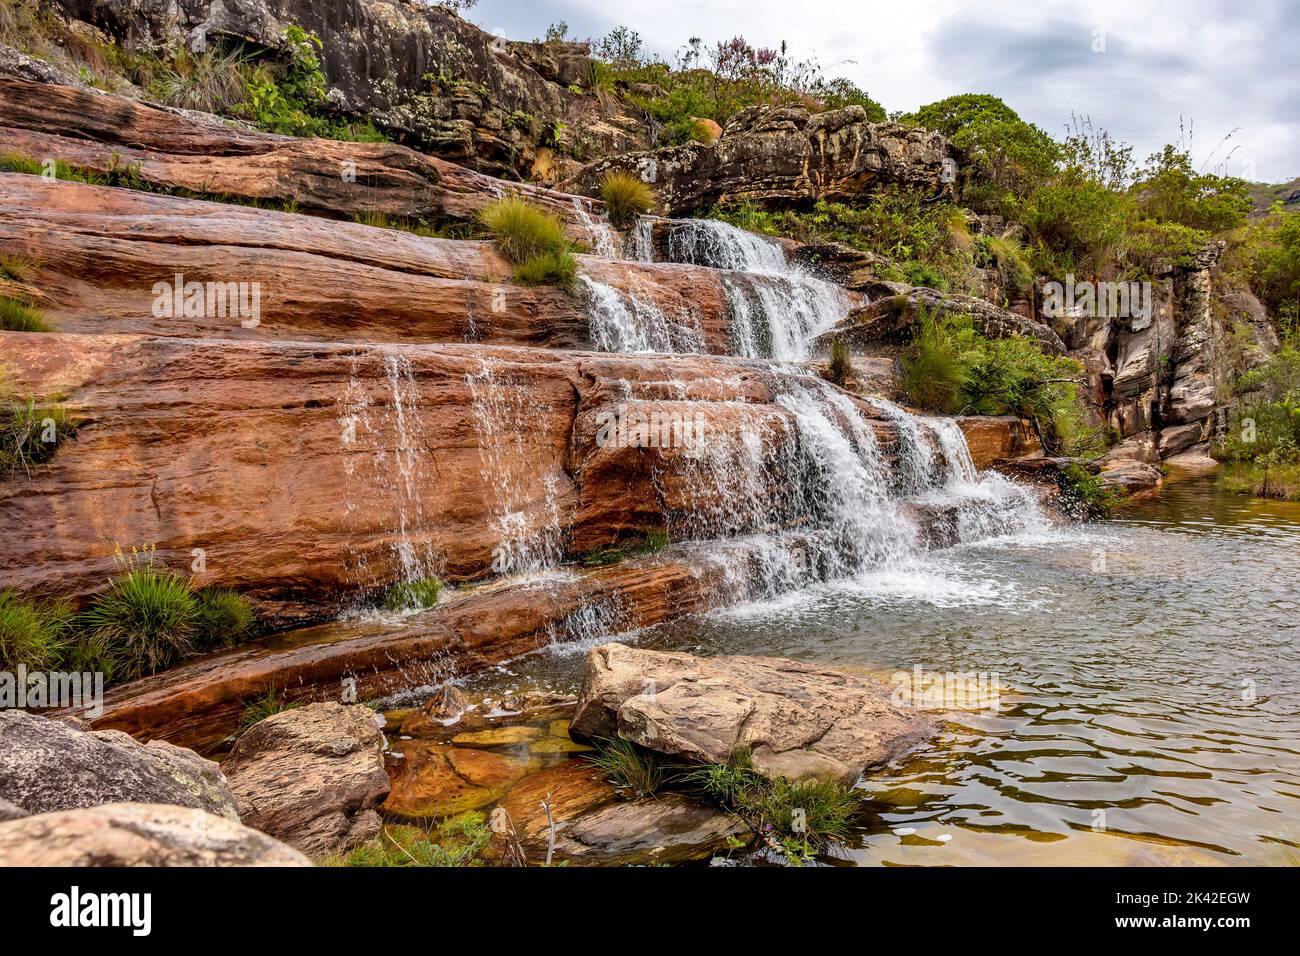 Kaskade und Fluss zwischen der erhaltenen Vegetation des Biribiri-Naturschutzgebietes in Diamantina, Minas Gerais, Brasilien Stockfoto